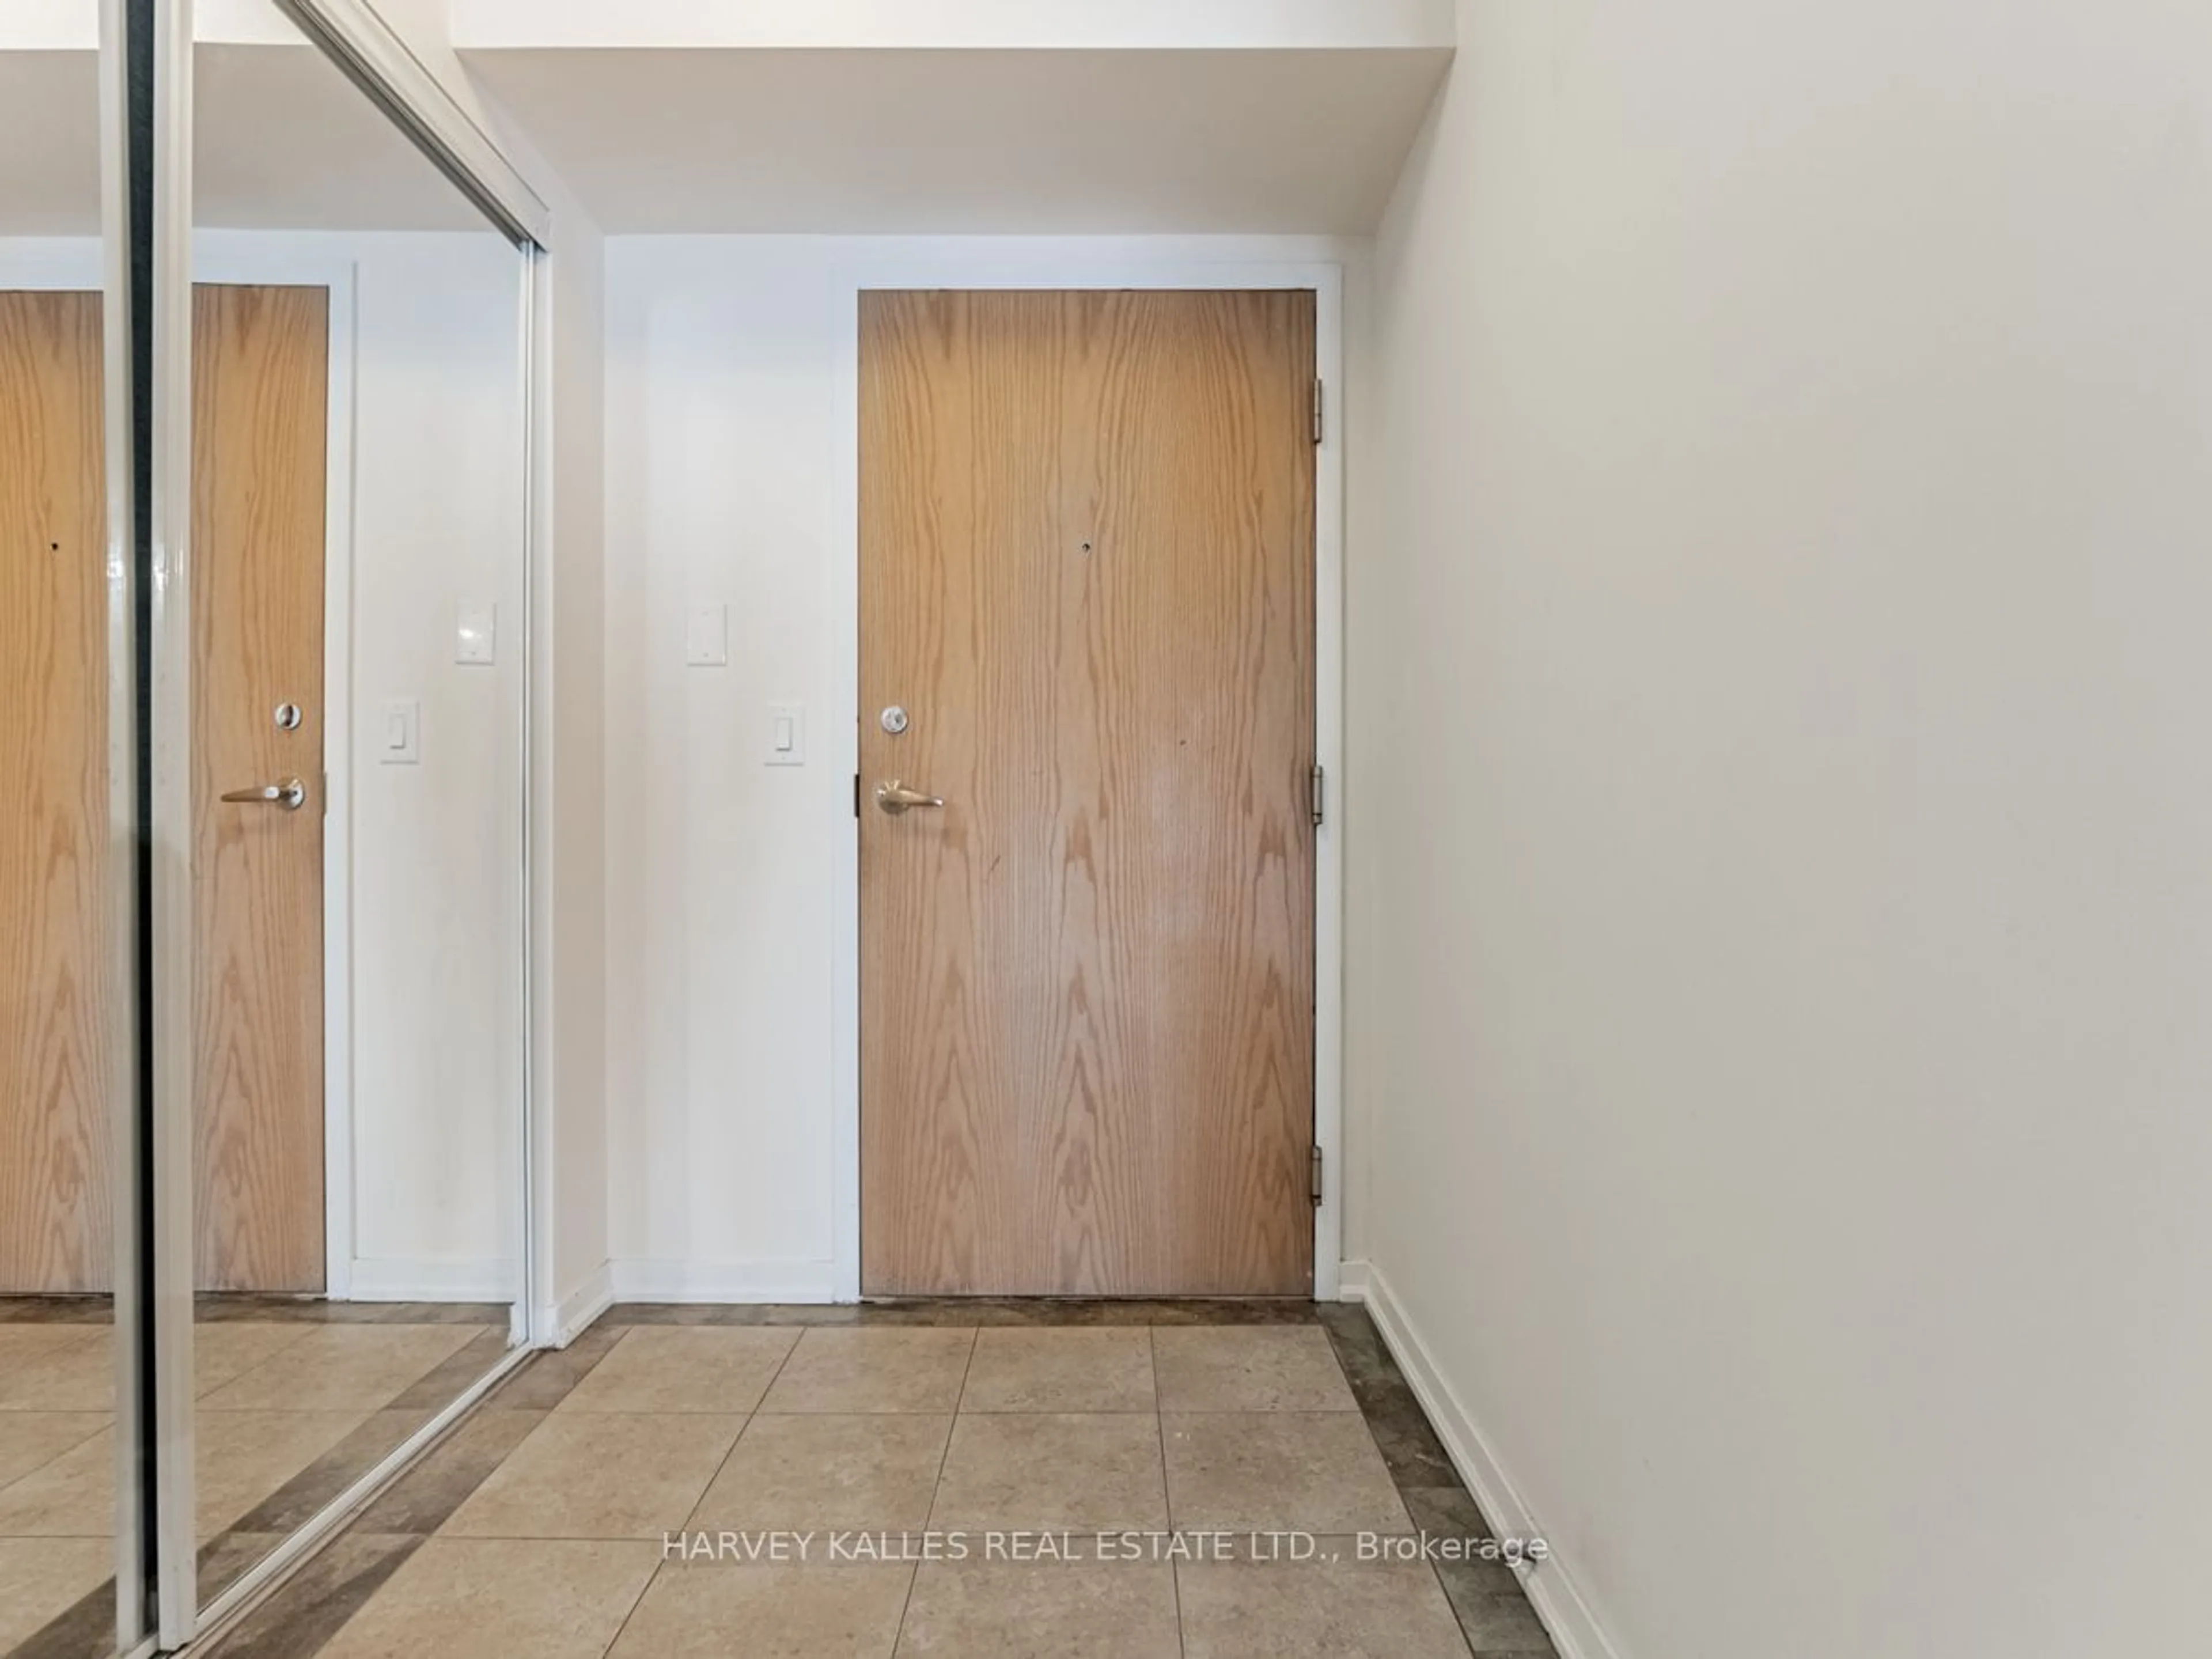 Indoor entryway for 38 Joe Shuster Way #804, Toronto Ontario M6K 0A5